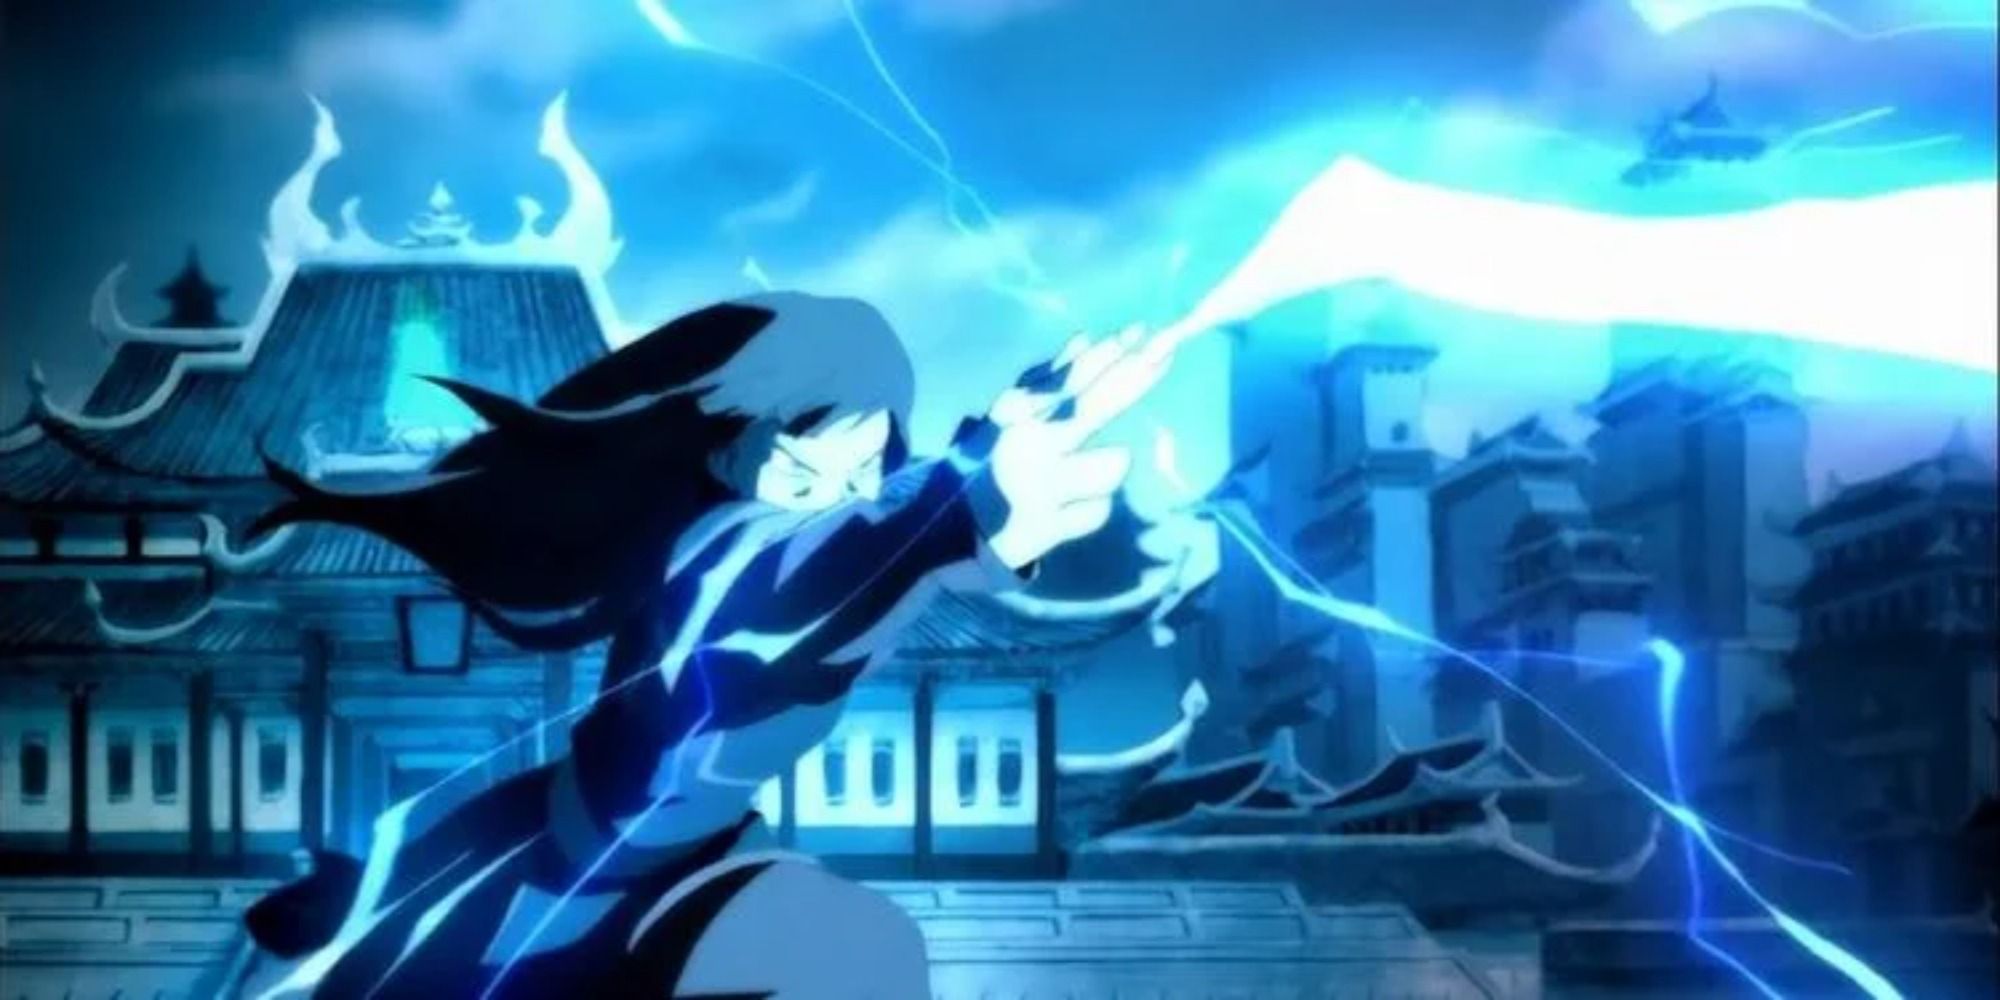 azula using lightning